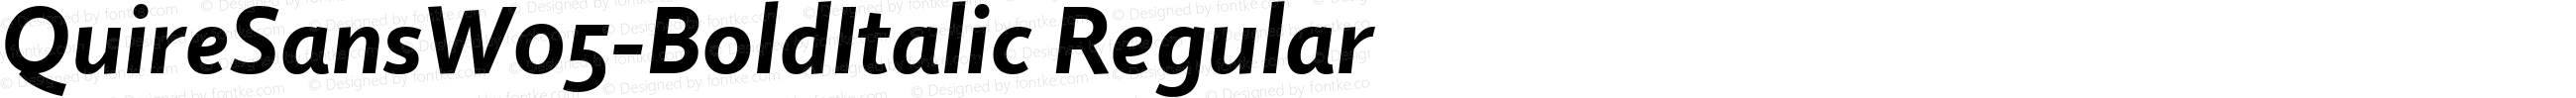 Quire Sans W05 Bold Italic